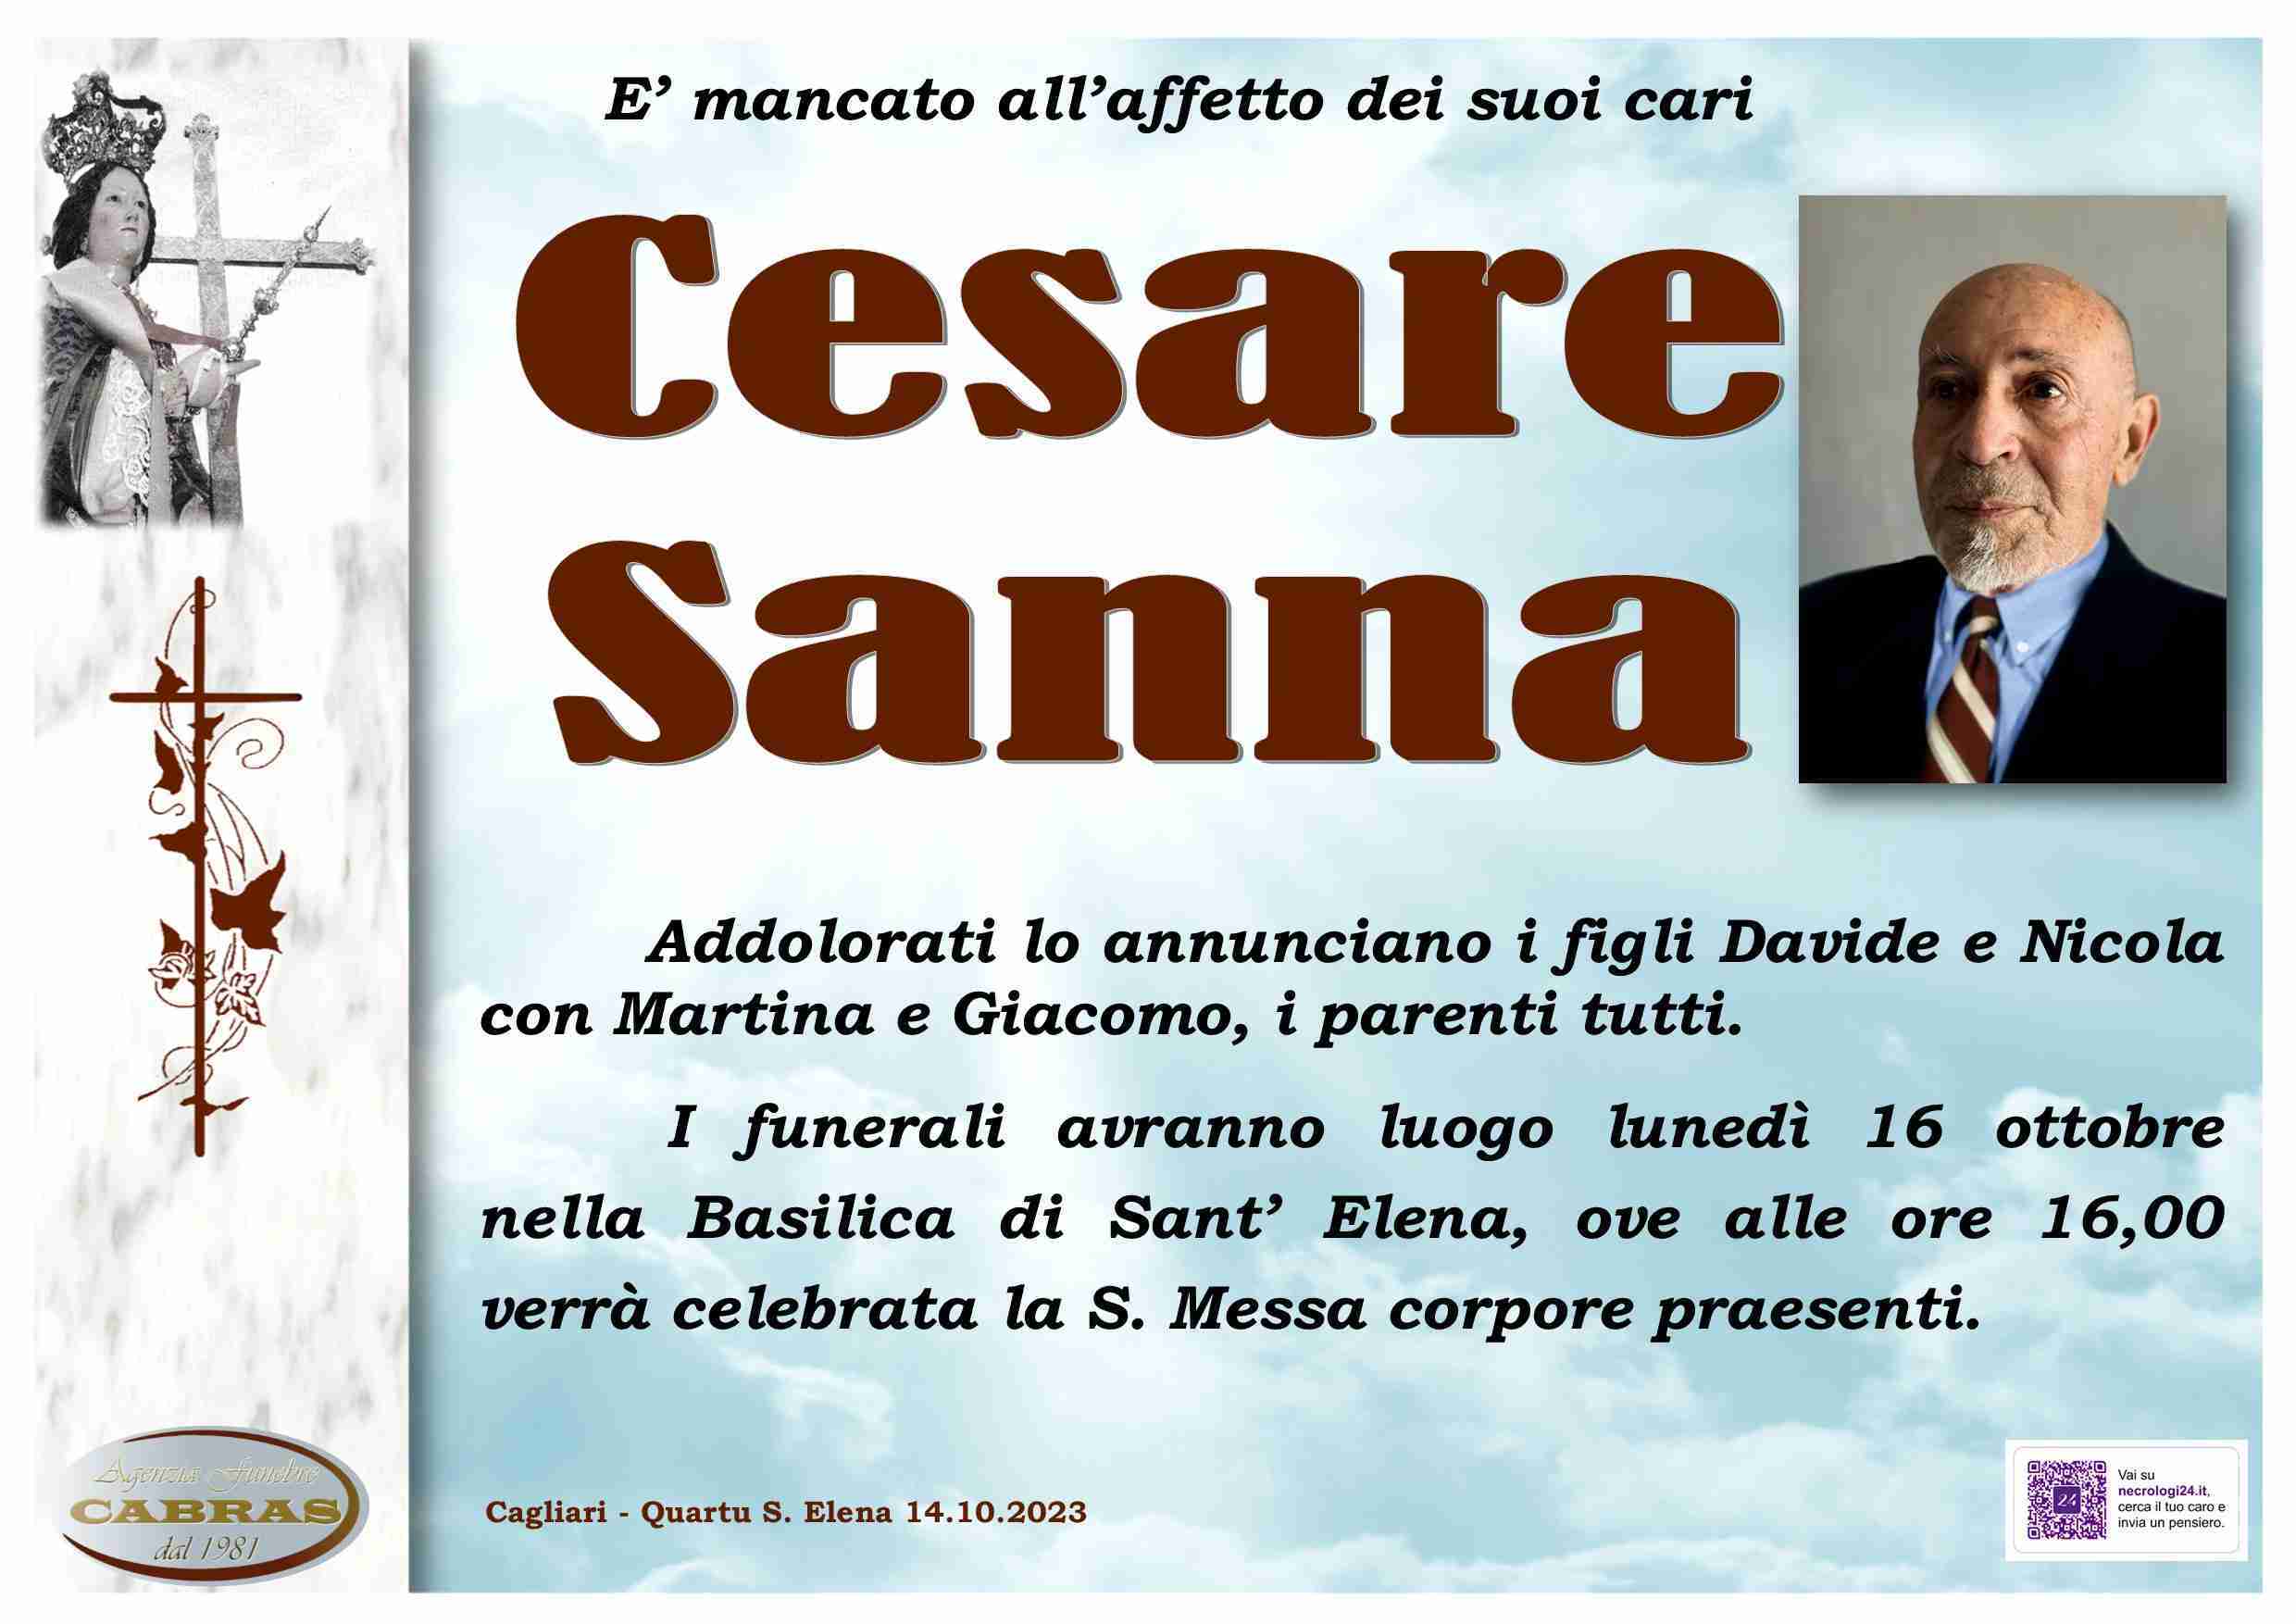 Cesare Sanna